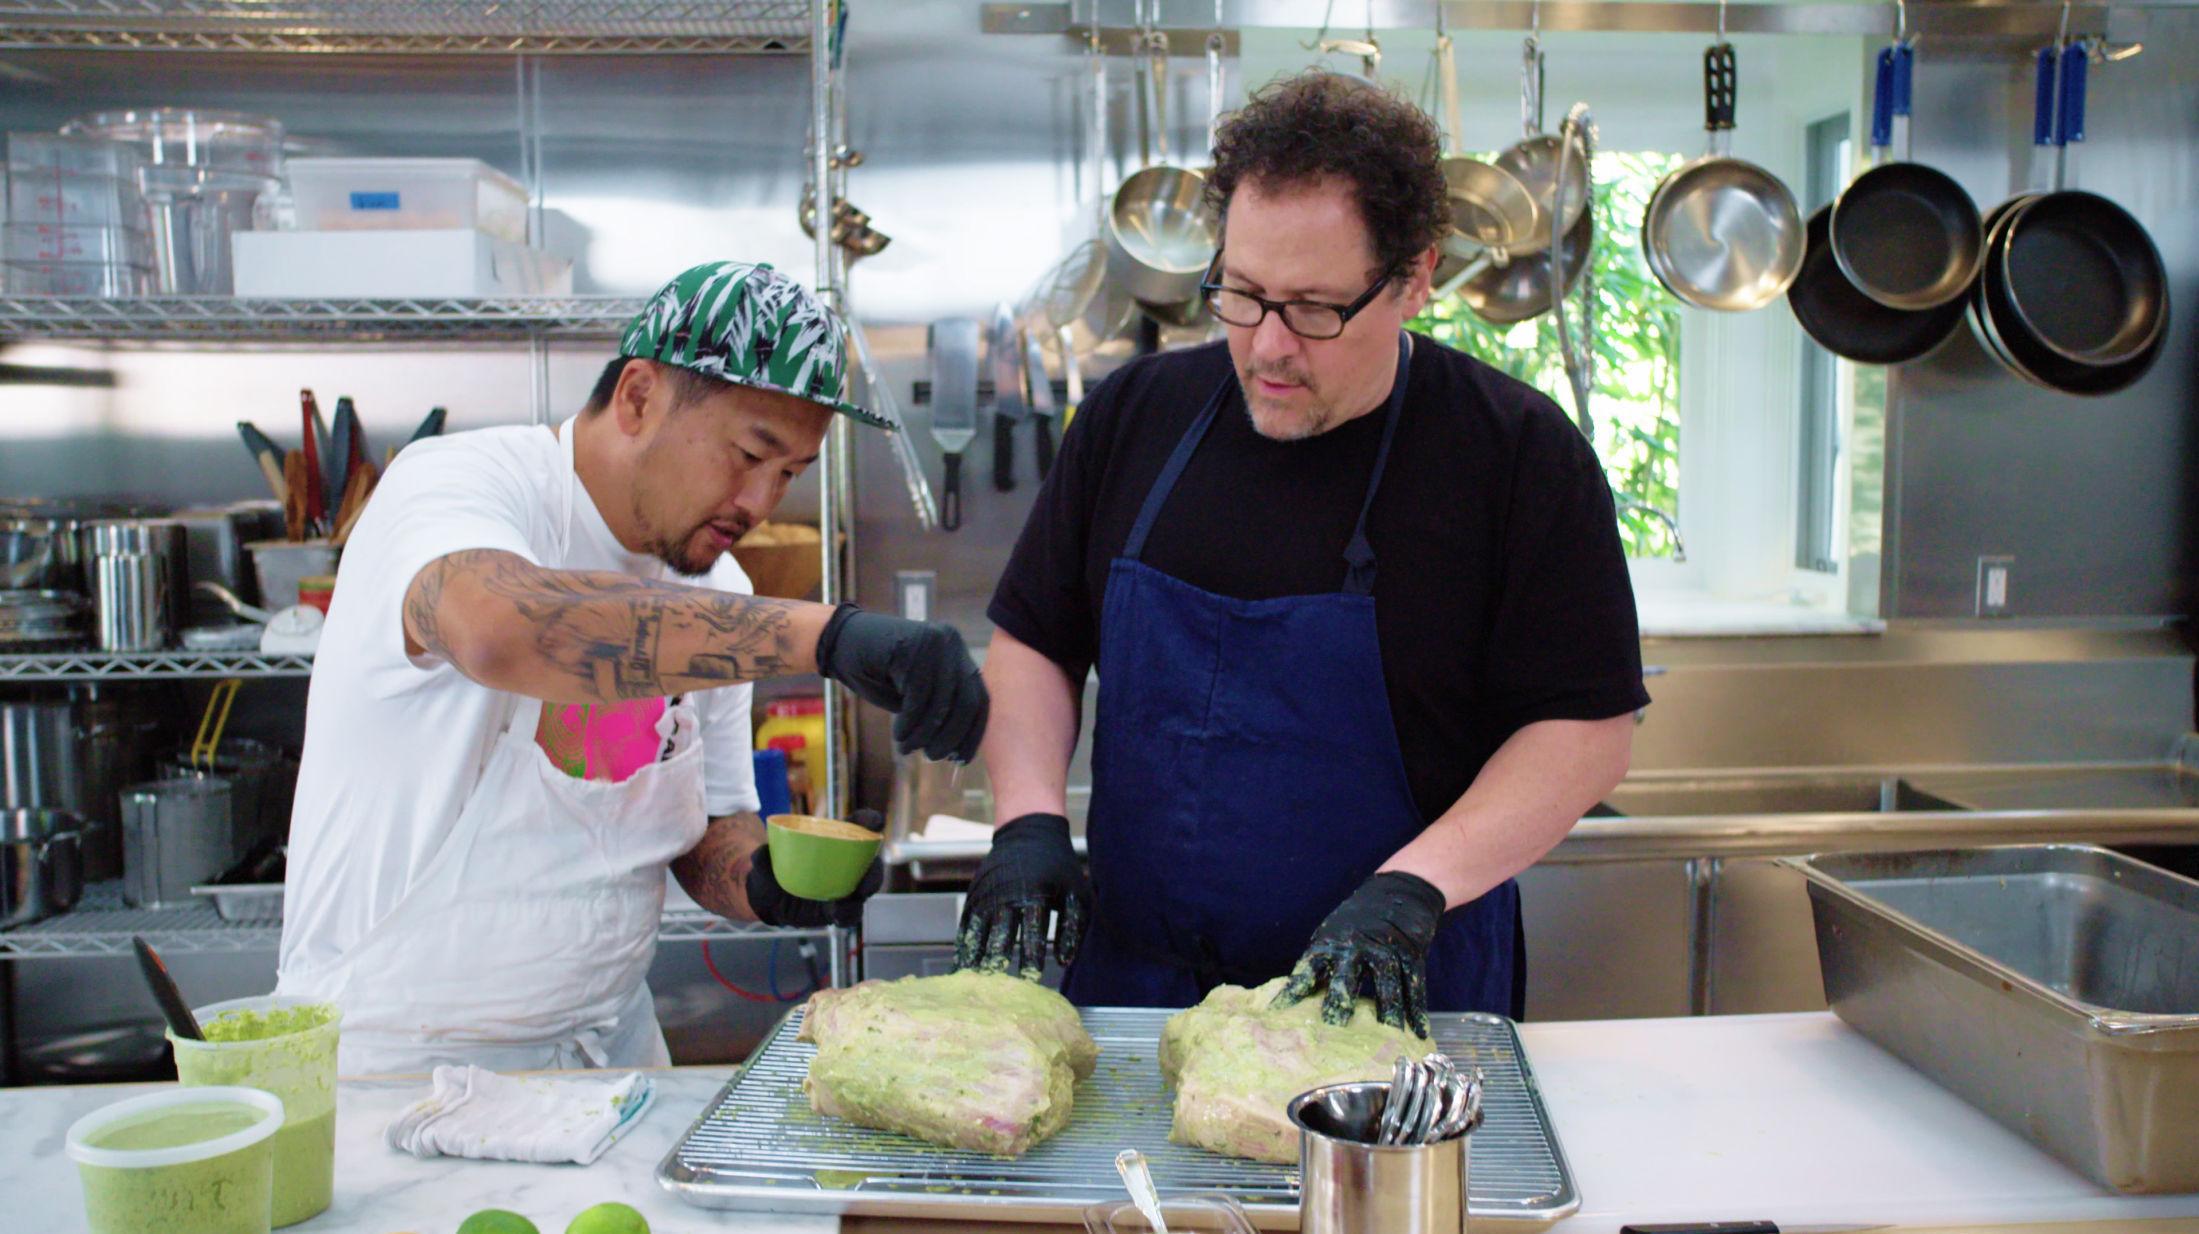 MAT-DUO: I serien The Chef Show lager kokk Roy Choi (t. v.) og skuespiller og filmskaper Jon Favreau mat - gjerne i selskap av kjendiser. Foto: Netflix